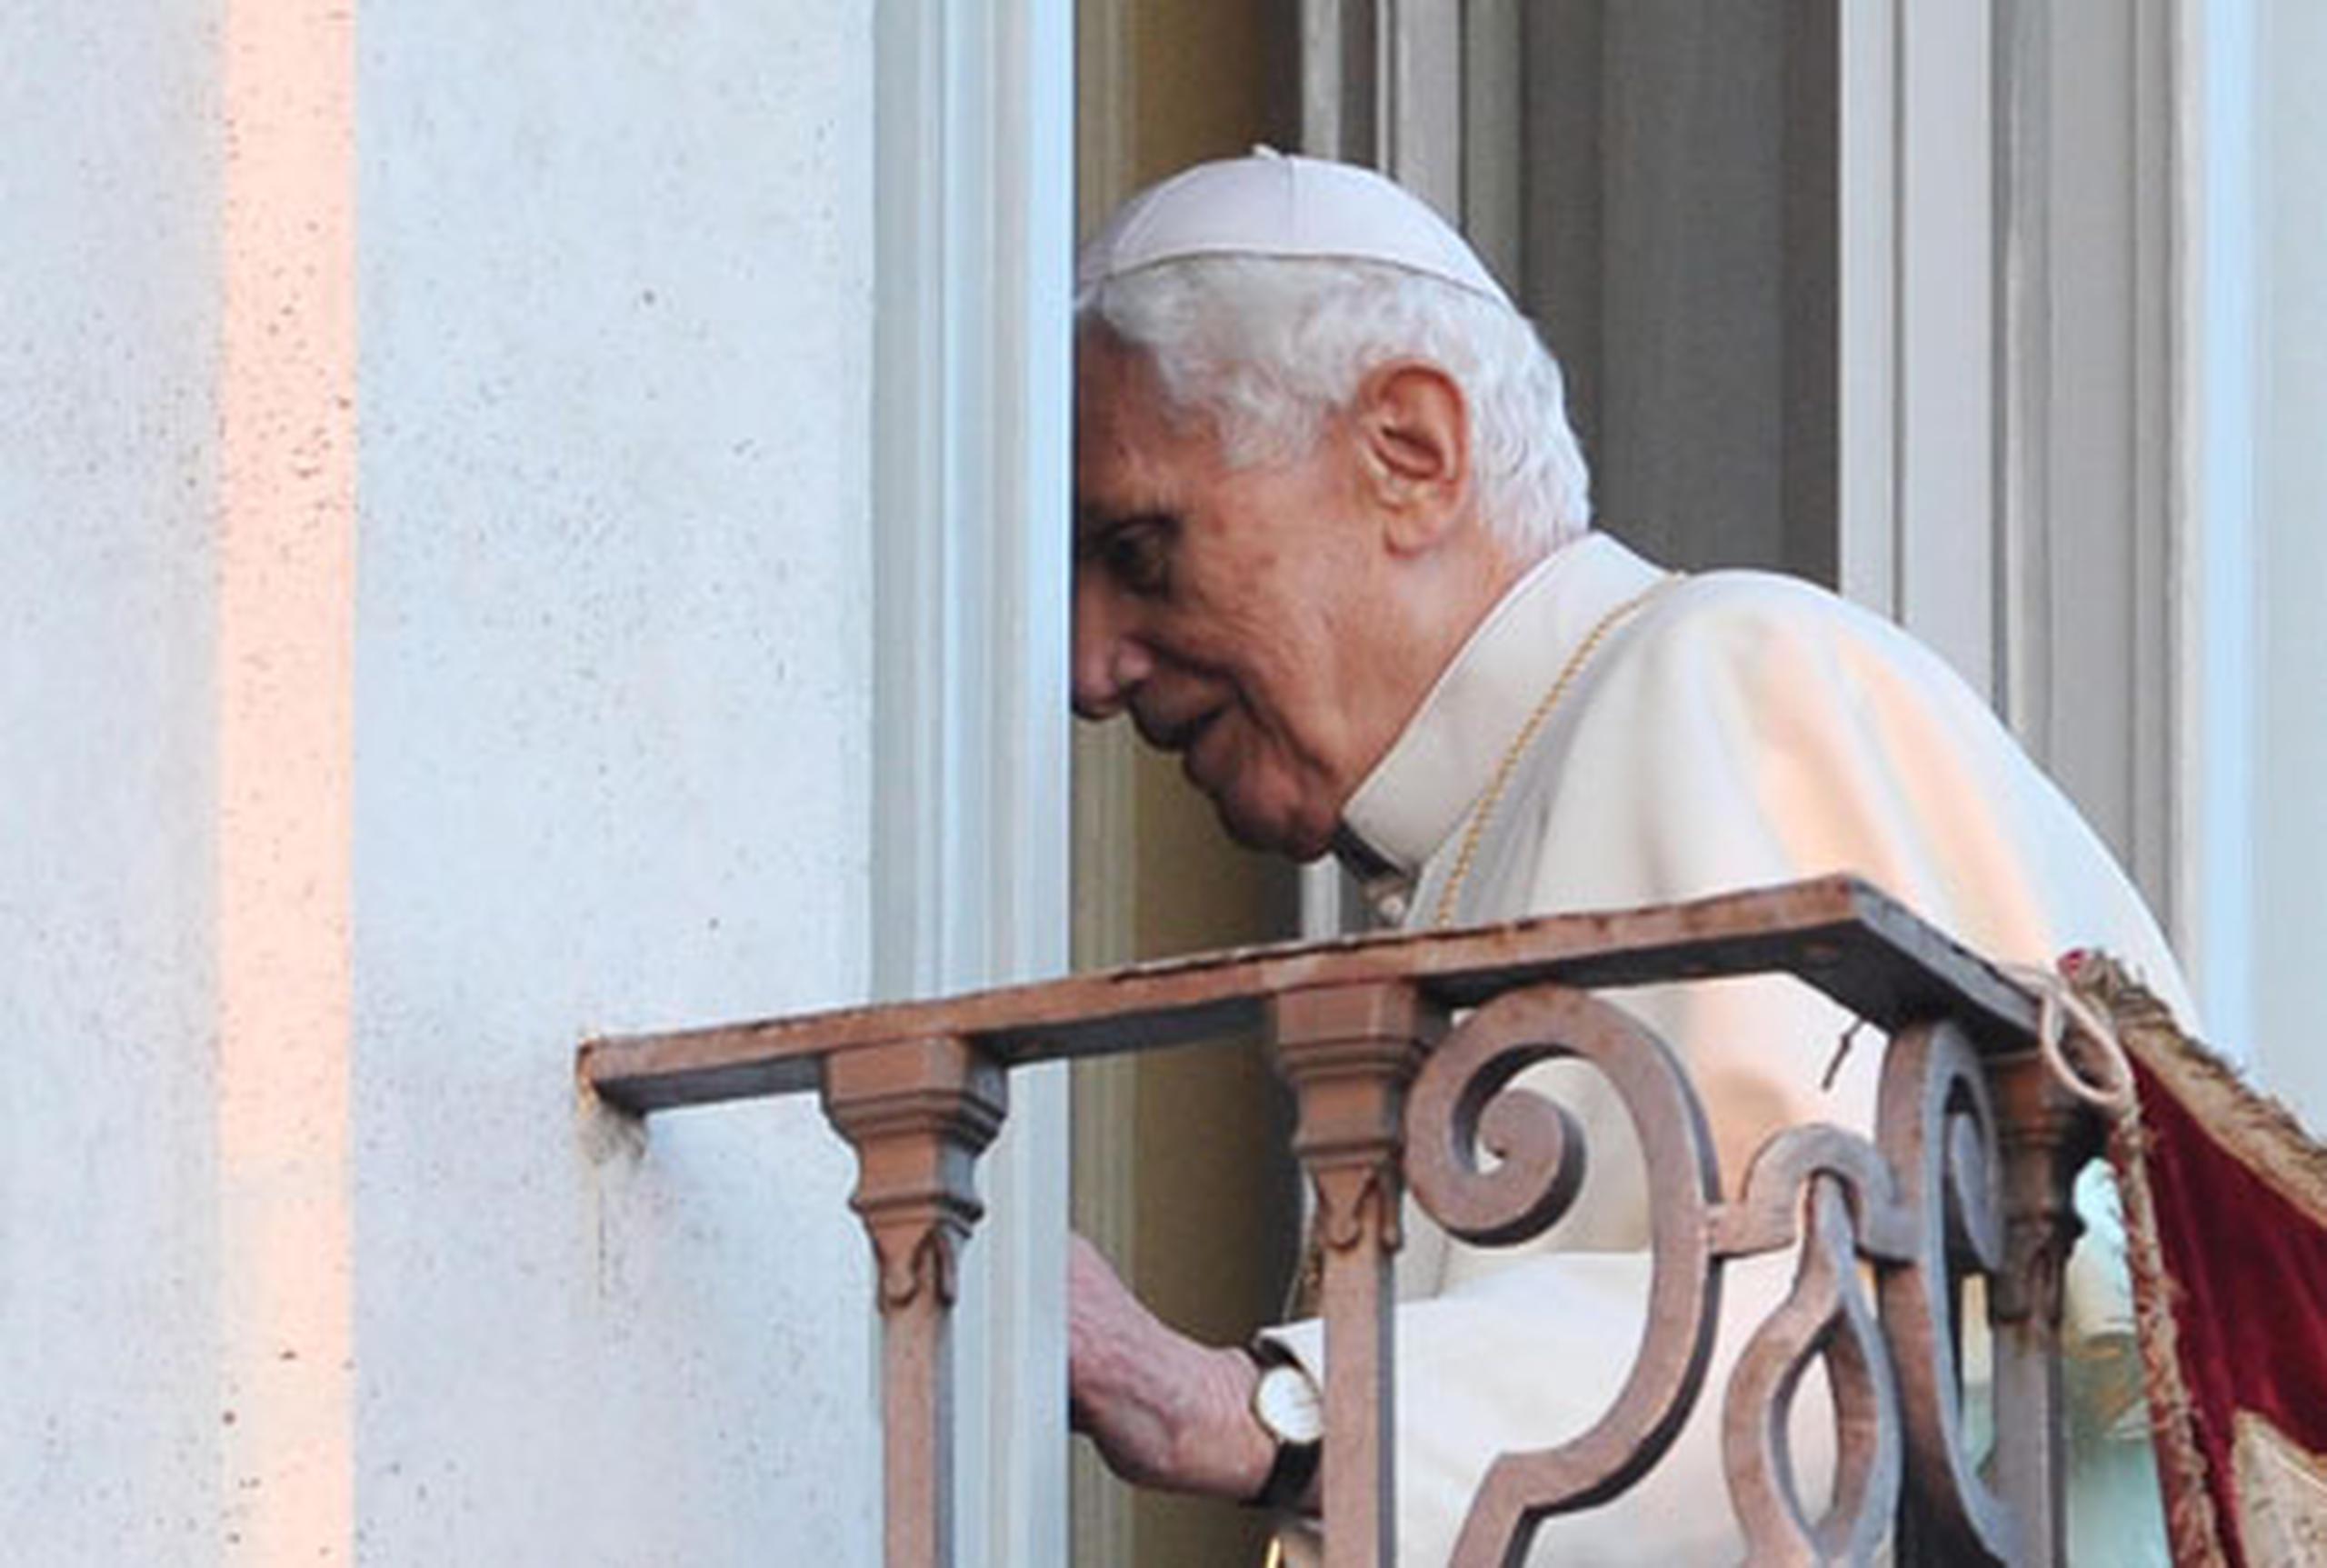 El pontífice prometió su "reverencia y obedencia incondicionales" a su sucesor. (EFE/Ettore Ferrari)